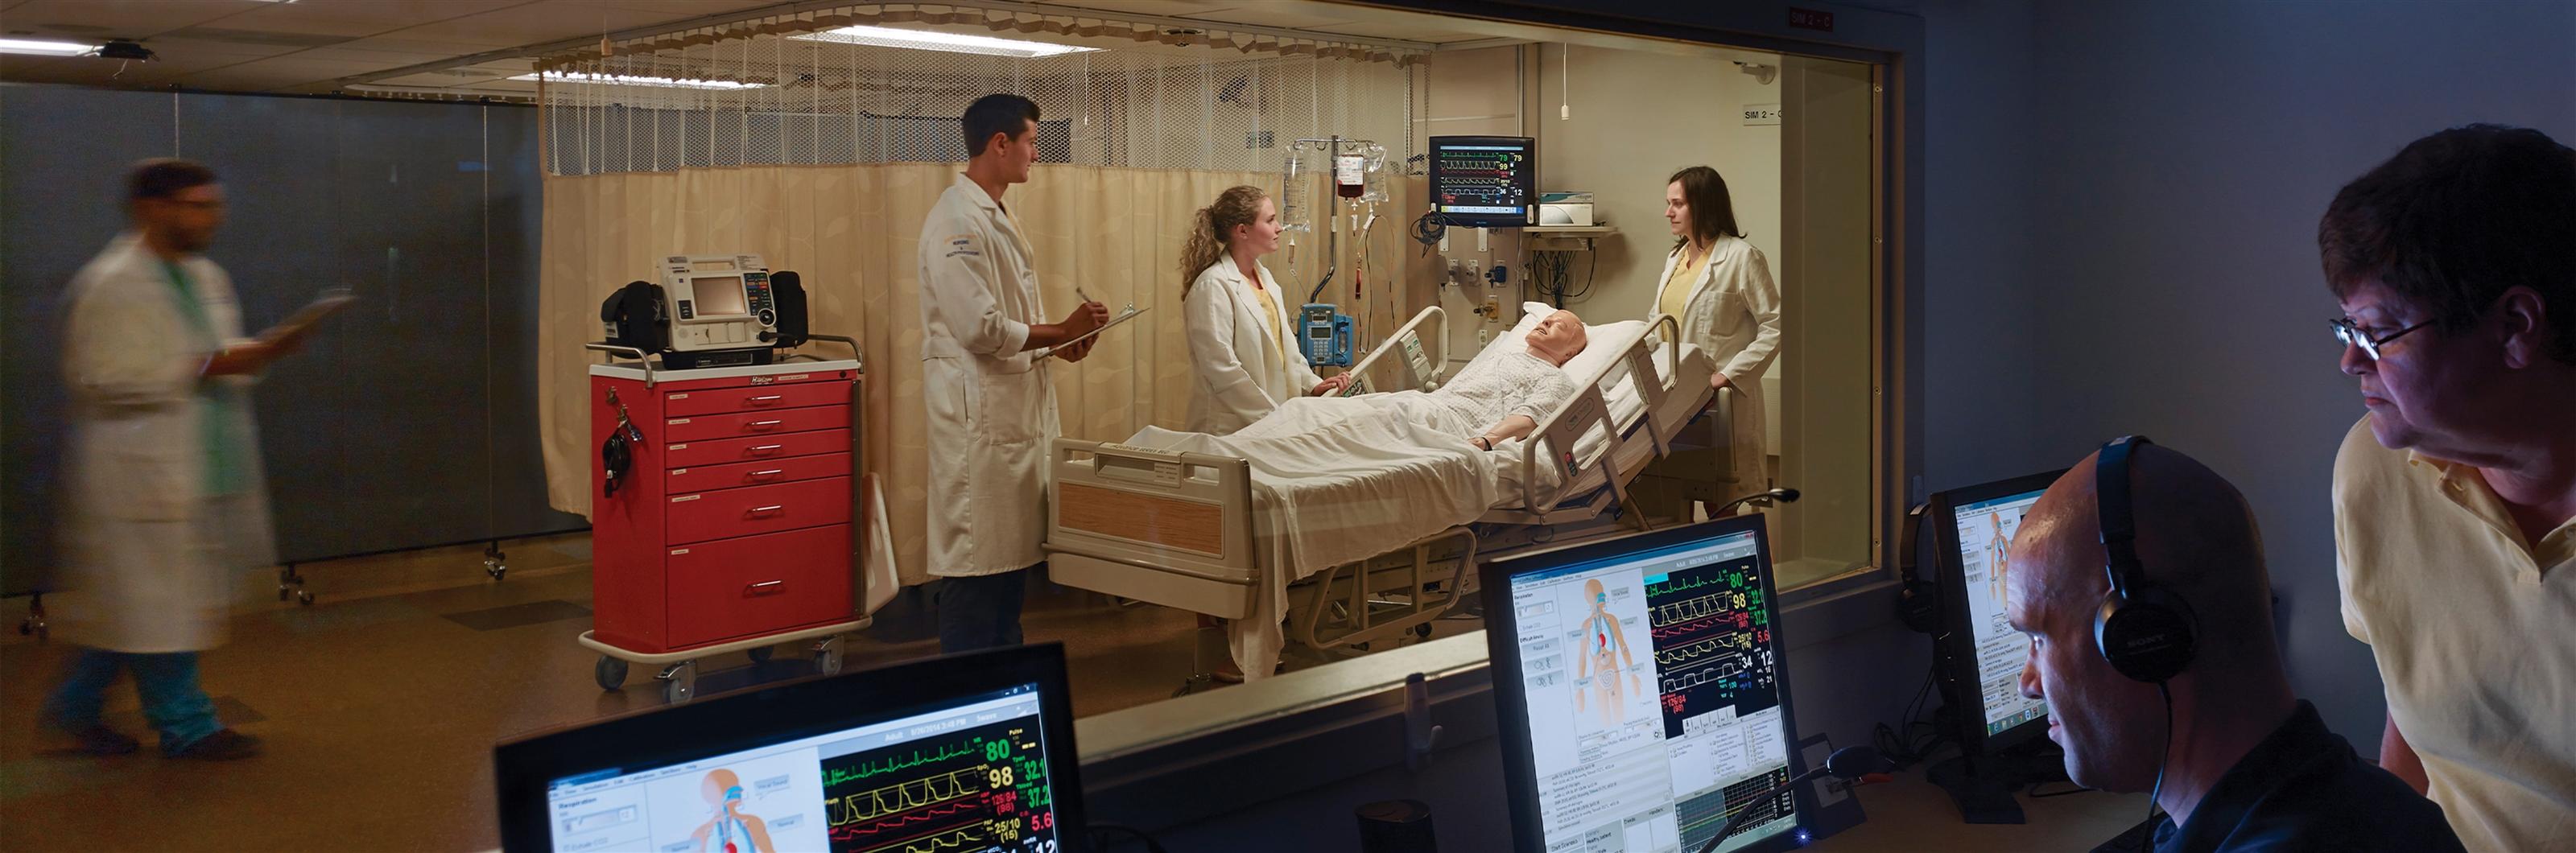 nursing students patient simulation